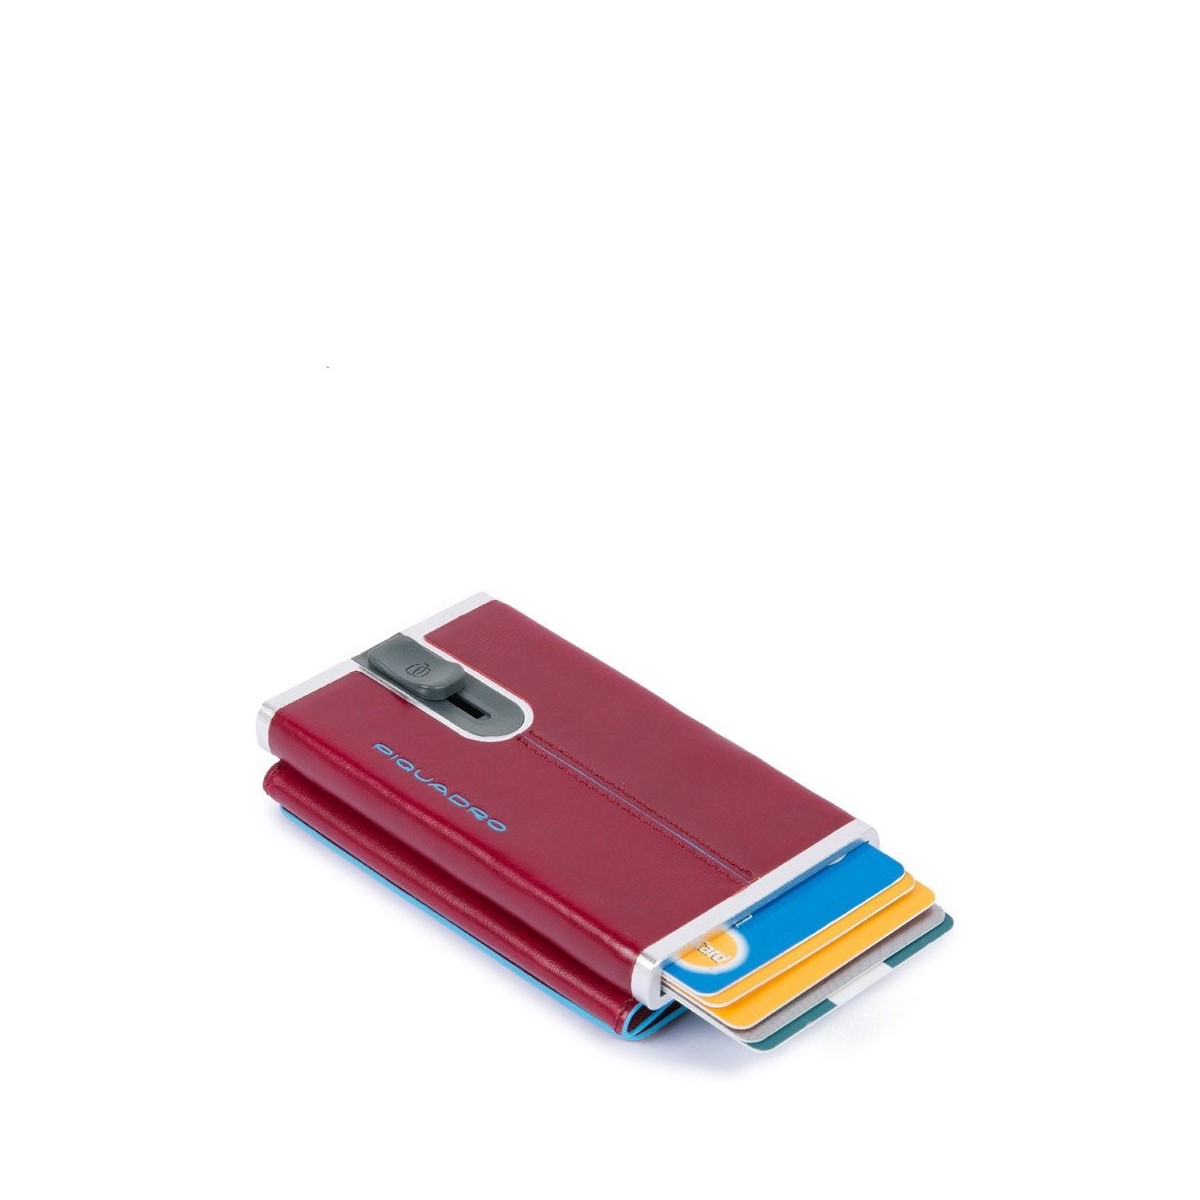 PIQUADRO Blue Square portafogli compact wallet, pelle rosso